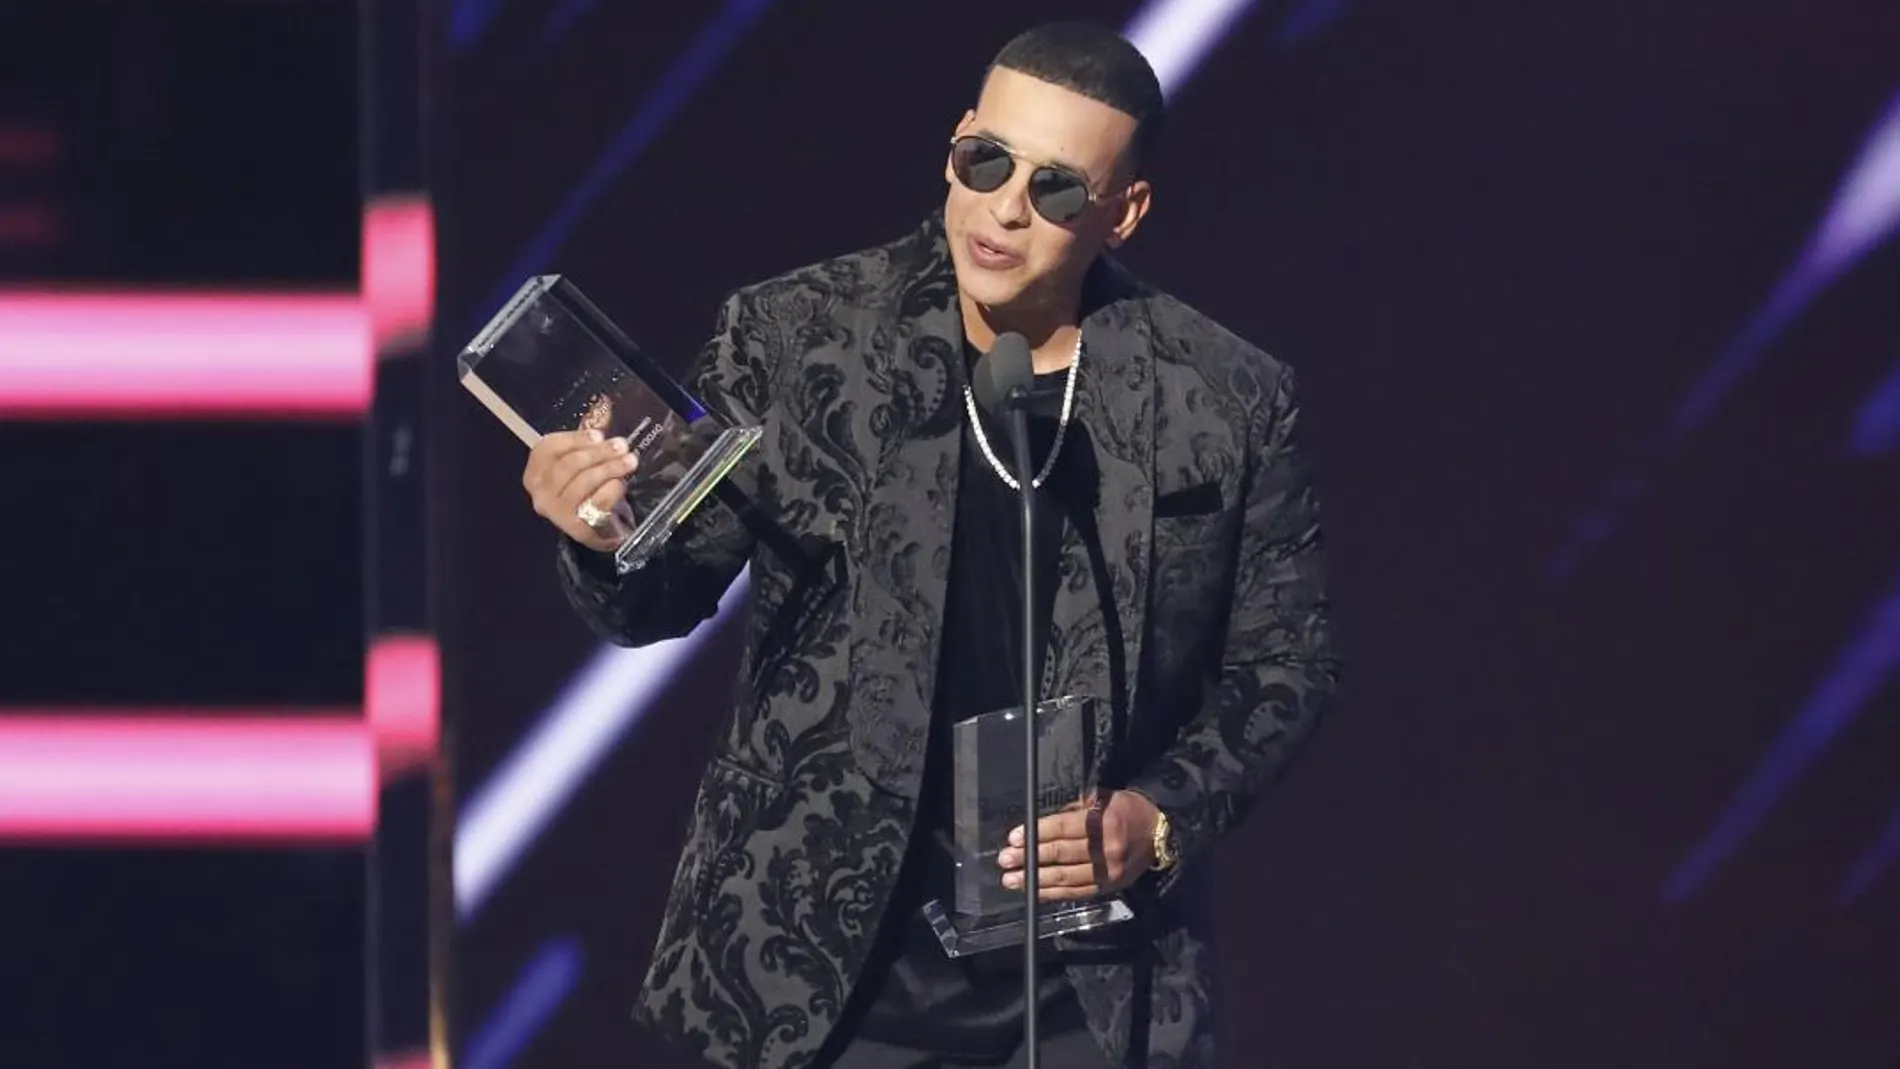 La oficina de prensa de Daddy Yankee confirmó el robo, pero no informó sobre la cuantía del botín, que medios españoles cifran en más de dos millones de euros. Foto: AP Photo / GTRESonline